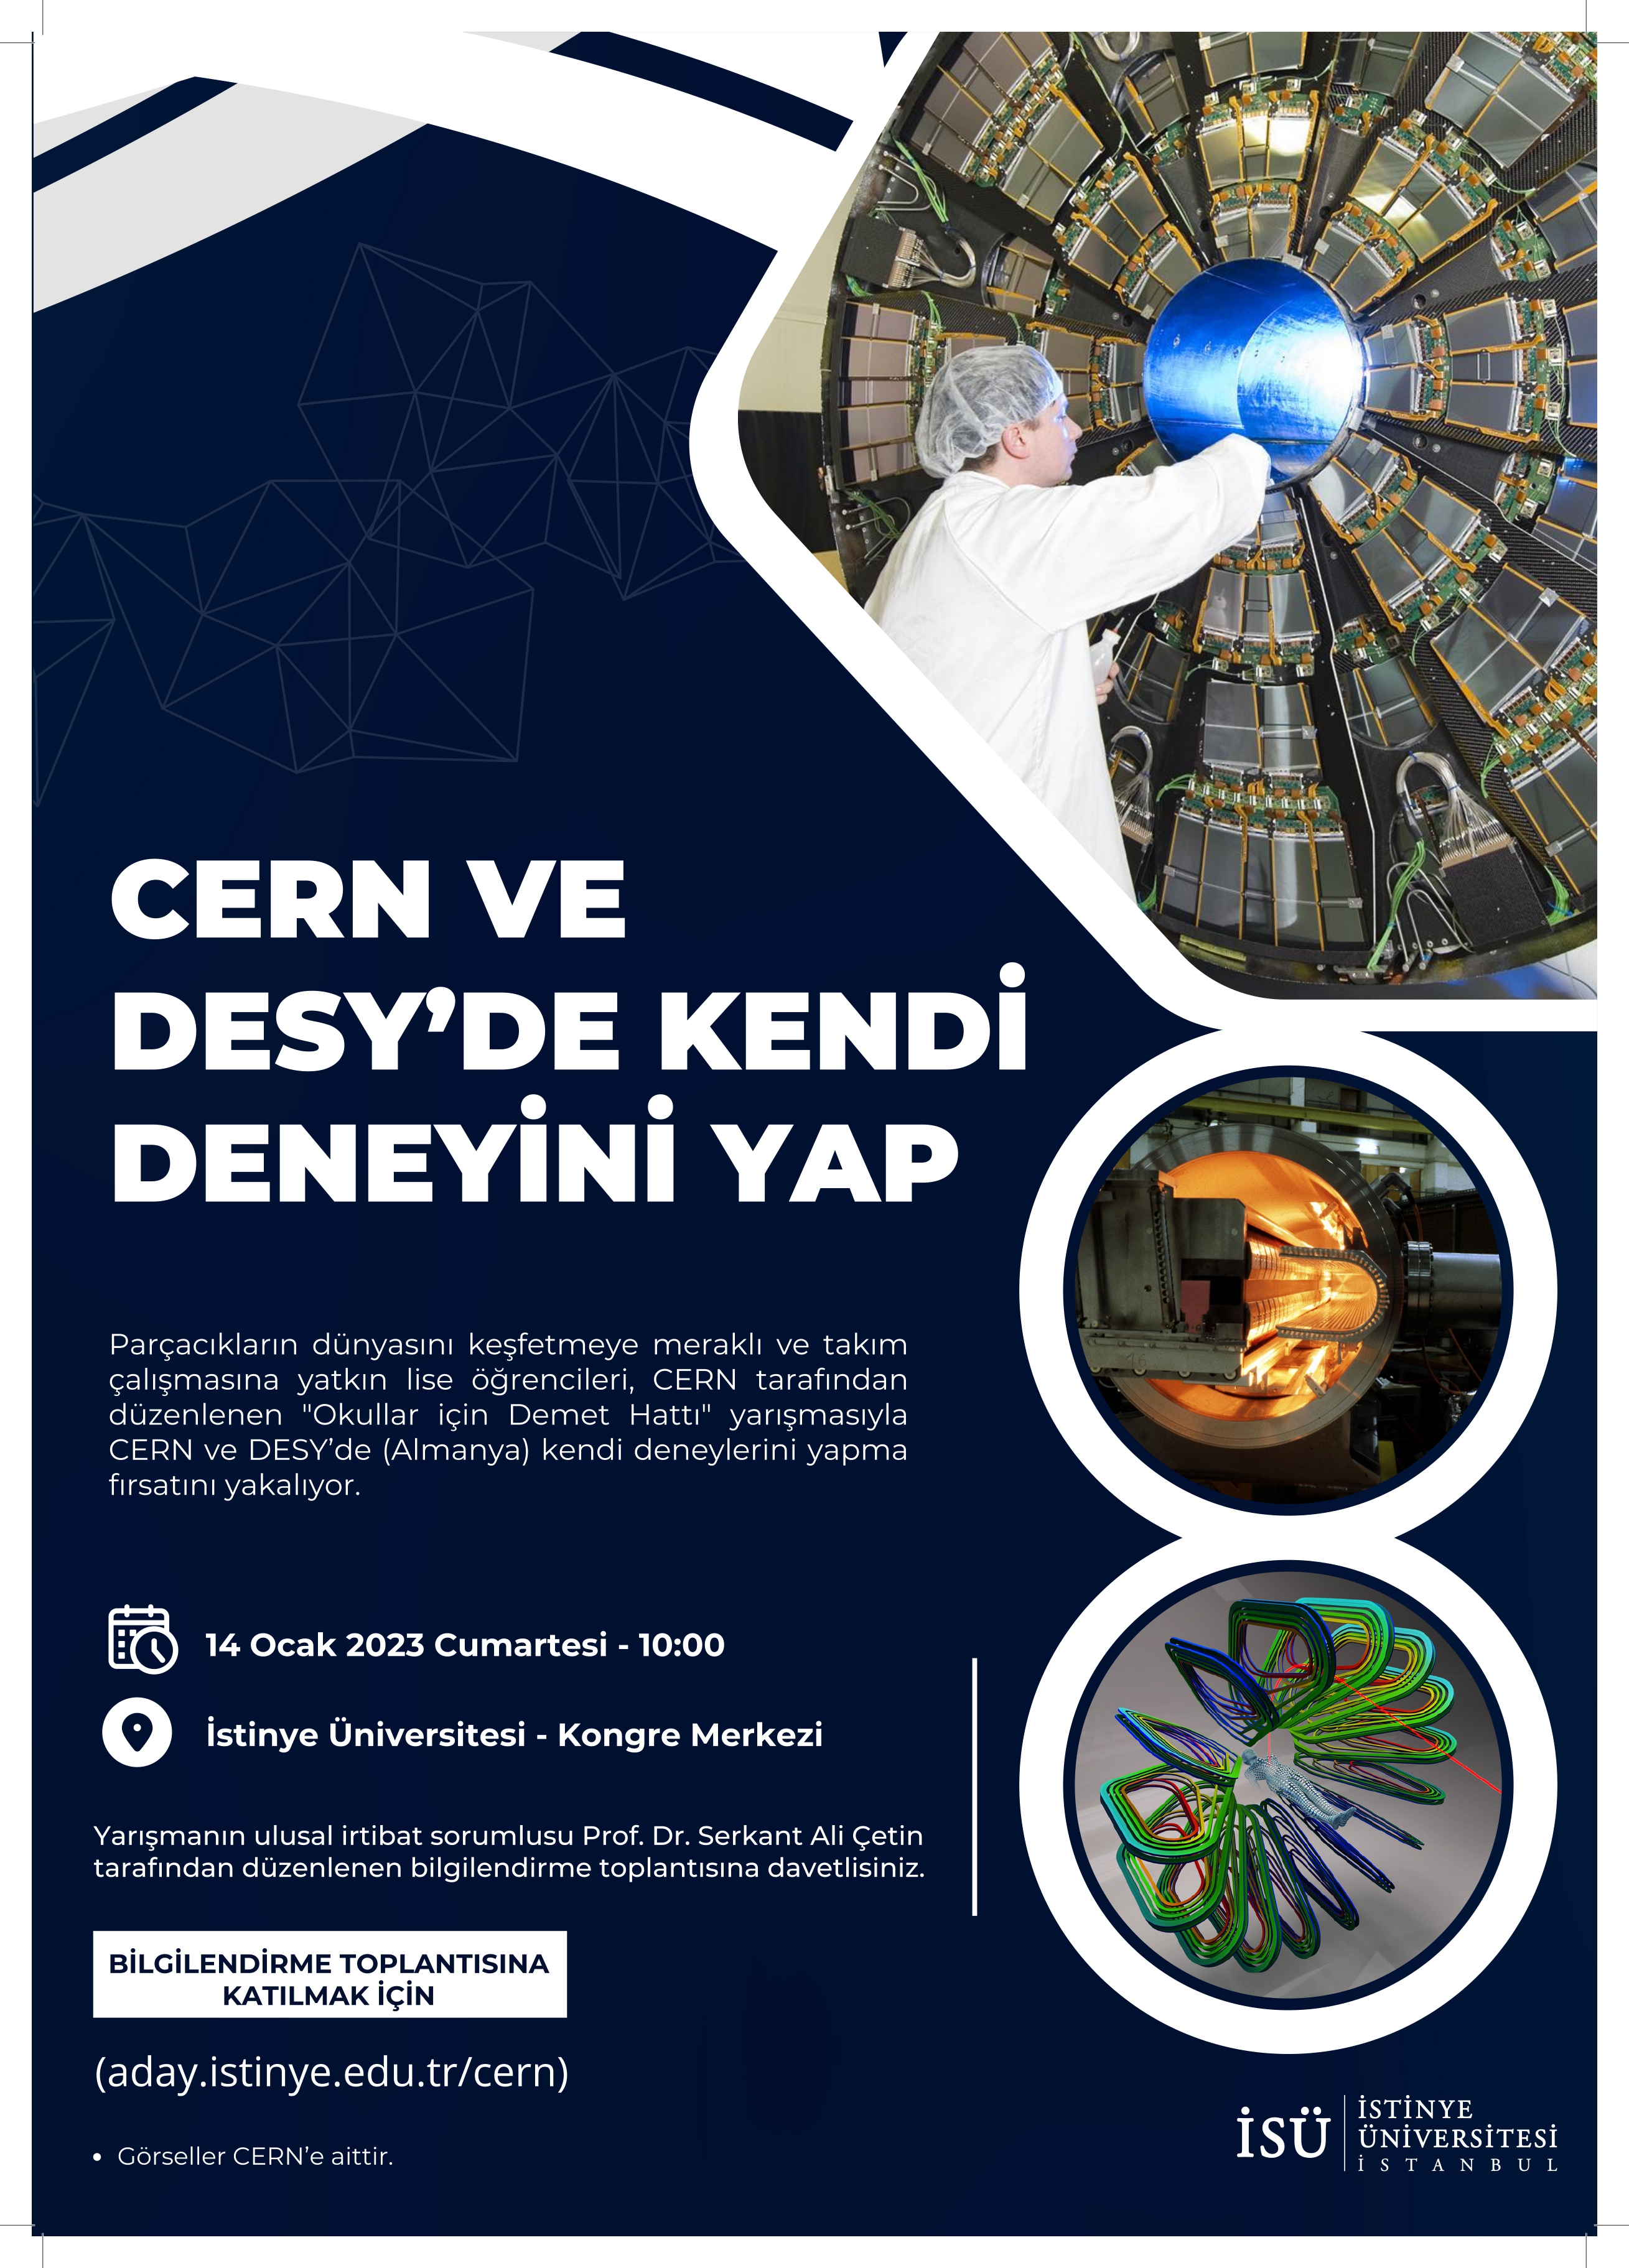 CERN ve DESY'de Kendi Deneyini Yap